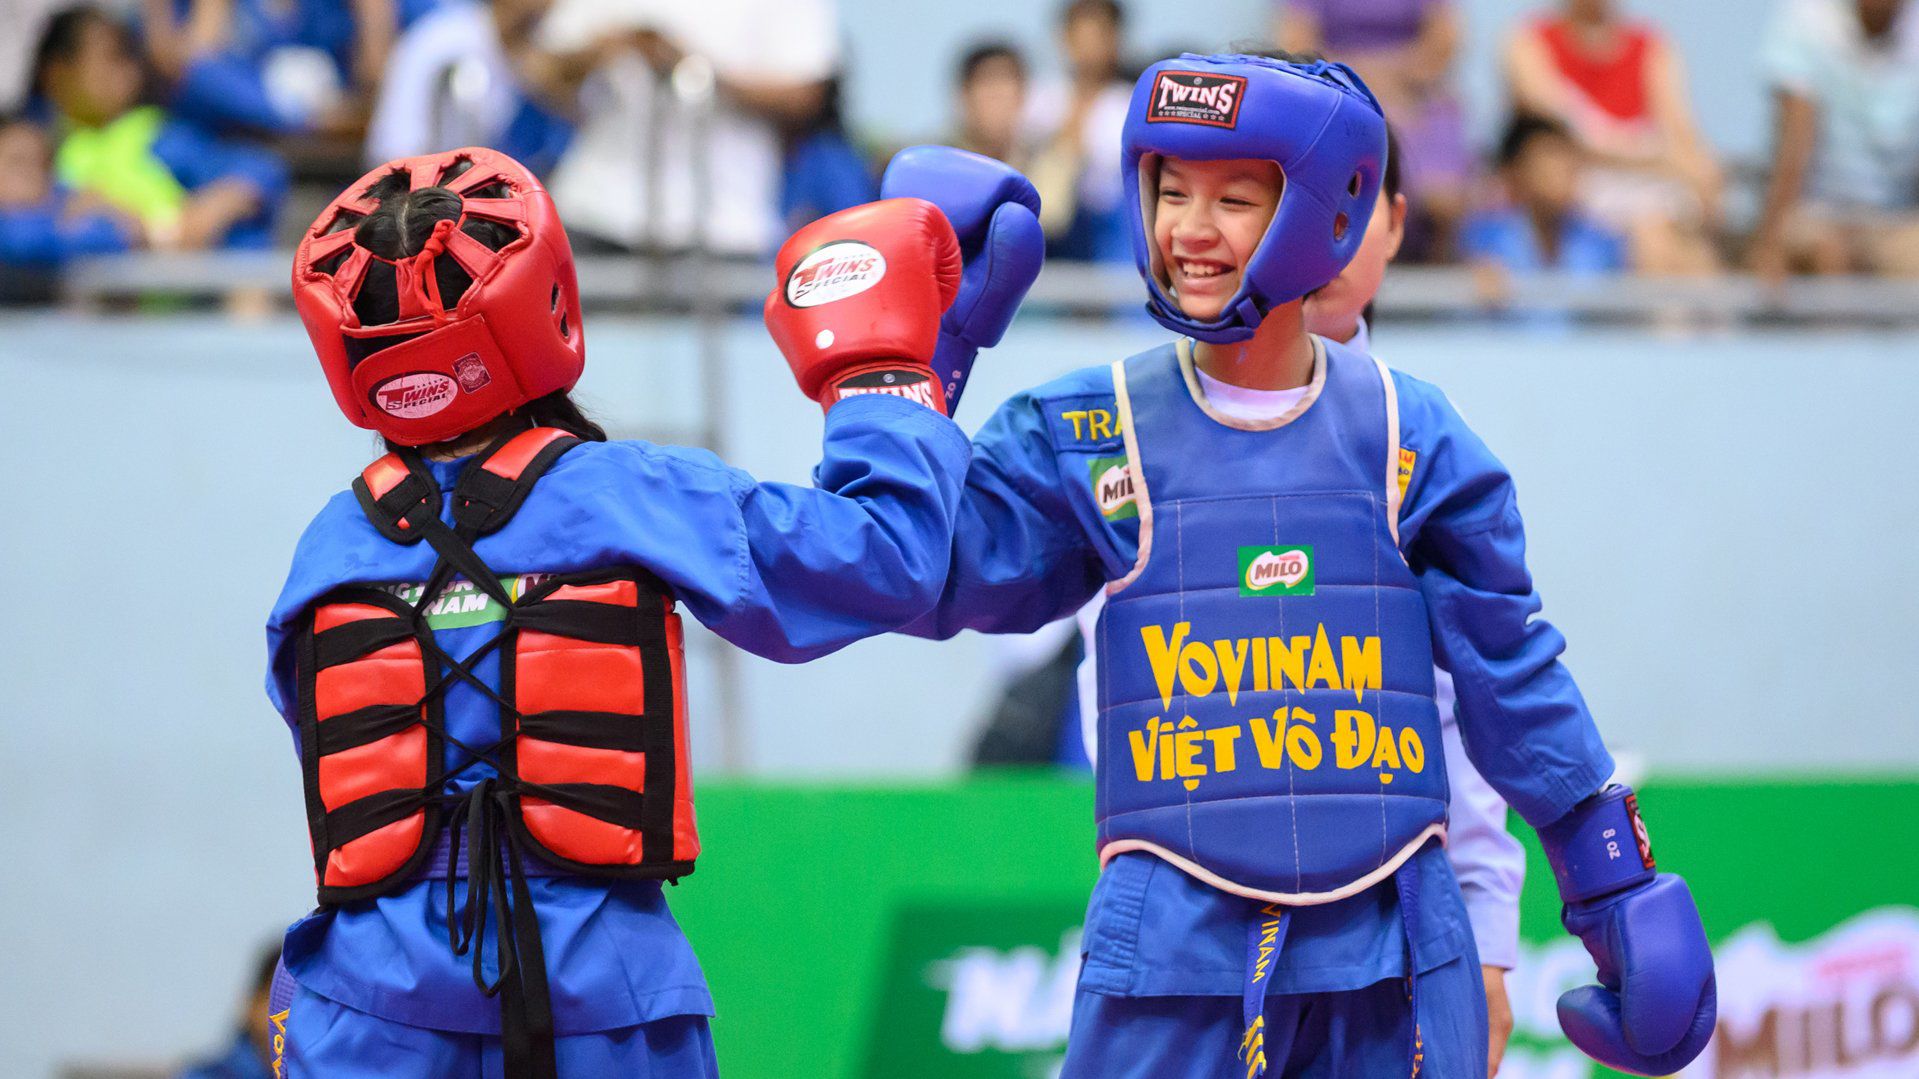 Từ giải thể thao học đường đến một thế hệ trẻ em Việt năng động, trưởng thành - 9